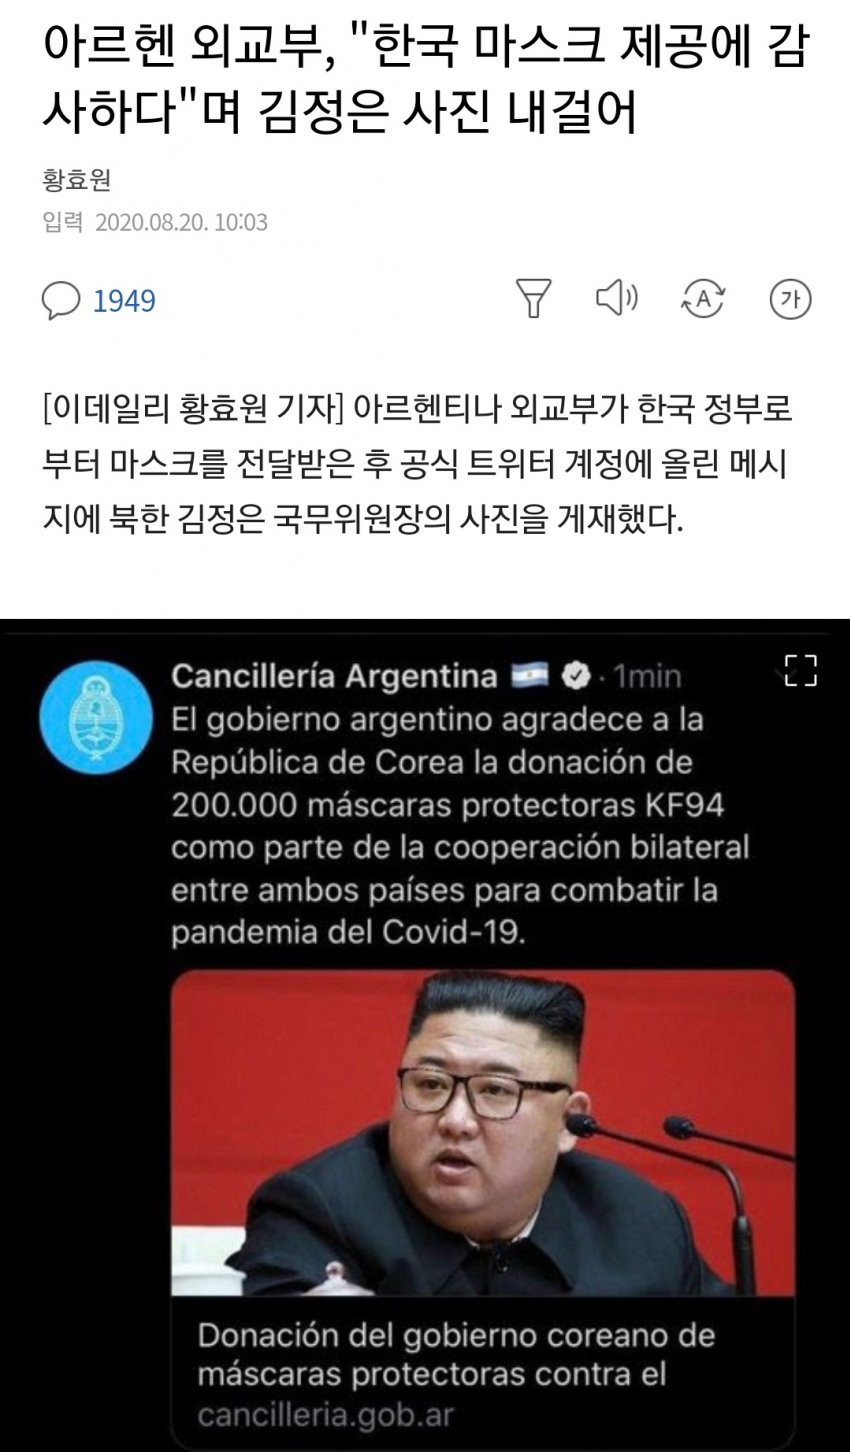  한국한테 마스크 제공받은 아르헨티나